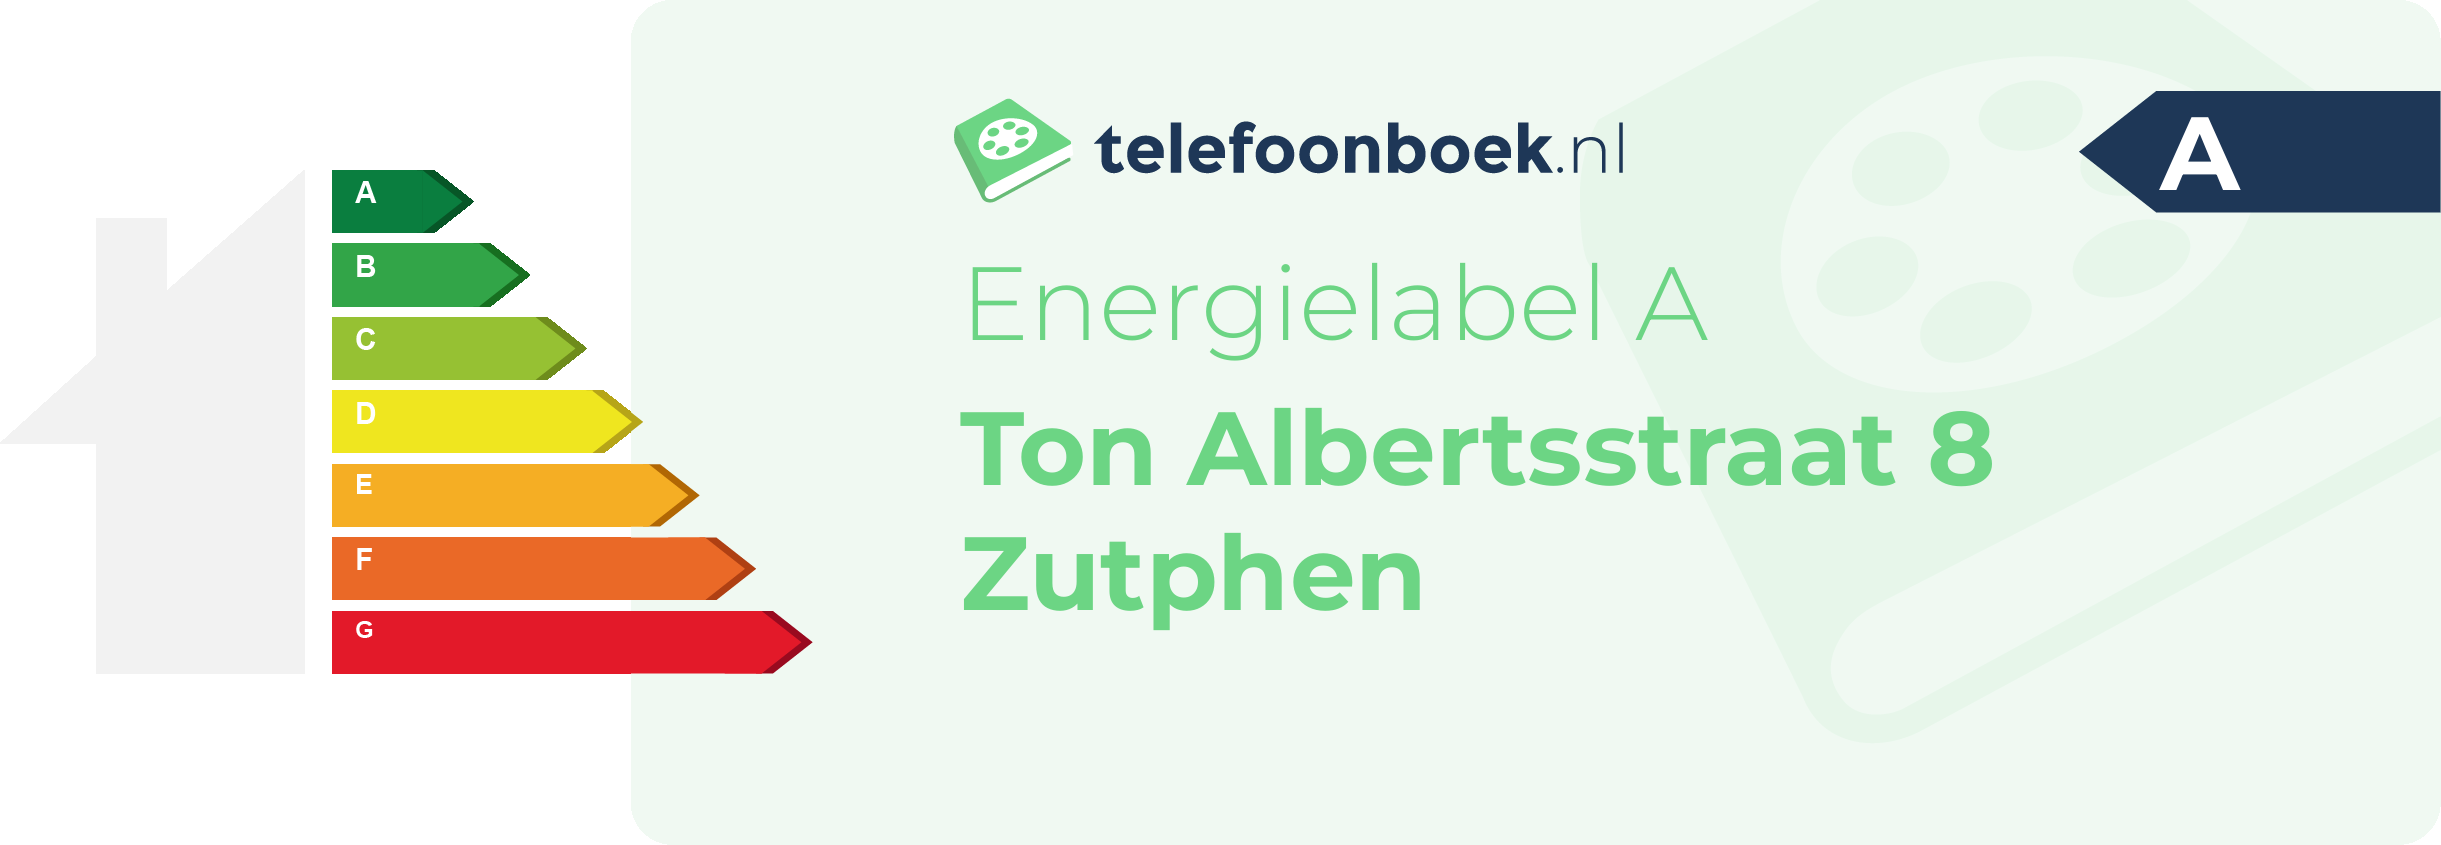 Energielabel Ton Albertsstraat 8 Zutphen